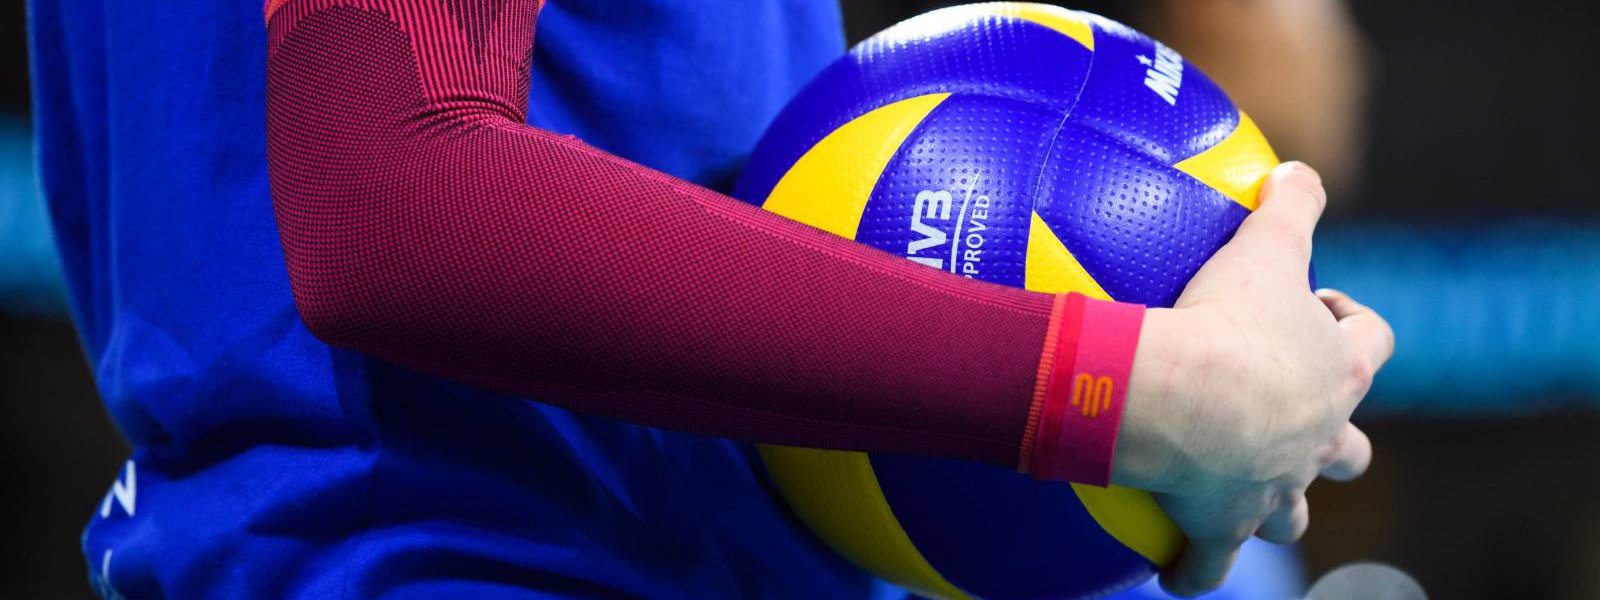 Volleyballspielerin mit pinken Arm Sleeves hat einen Volleyball in der Hand